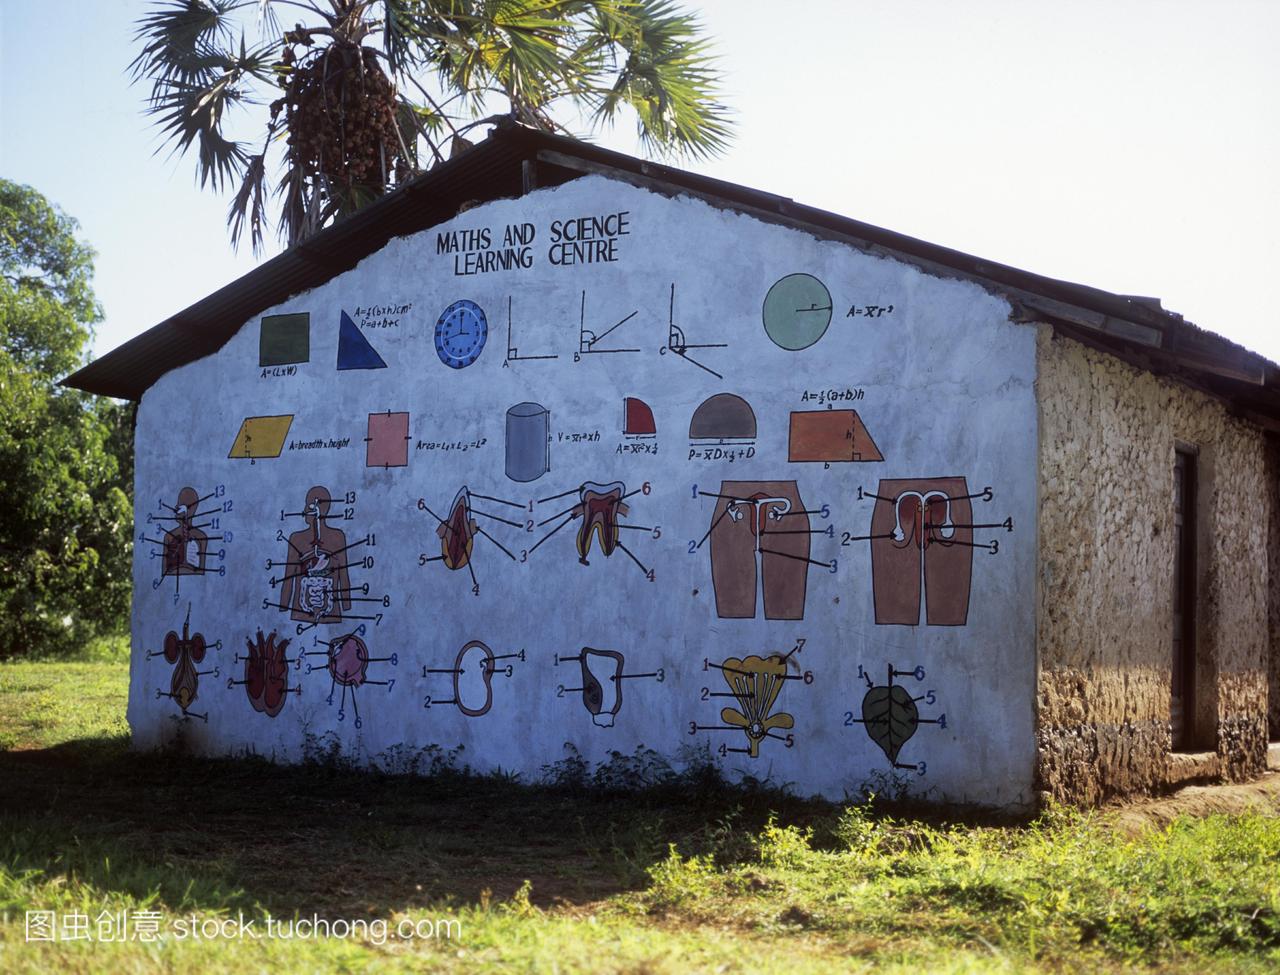 学校建筑。在肯尼亚的数学和科学学习中心墙上